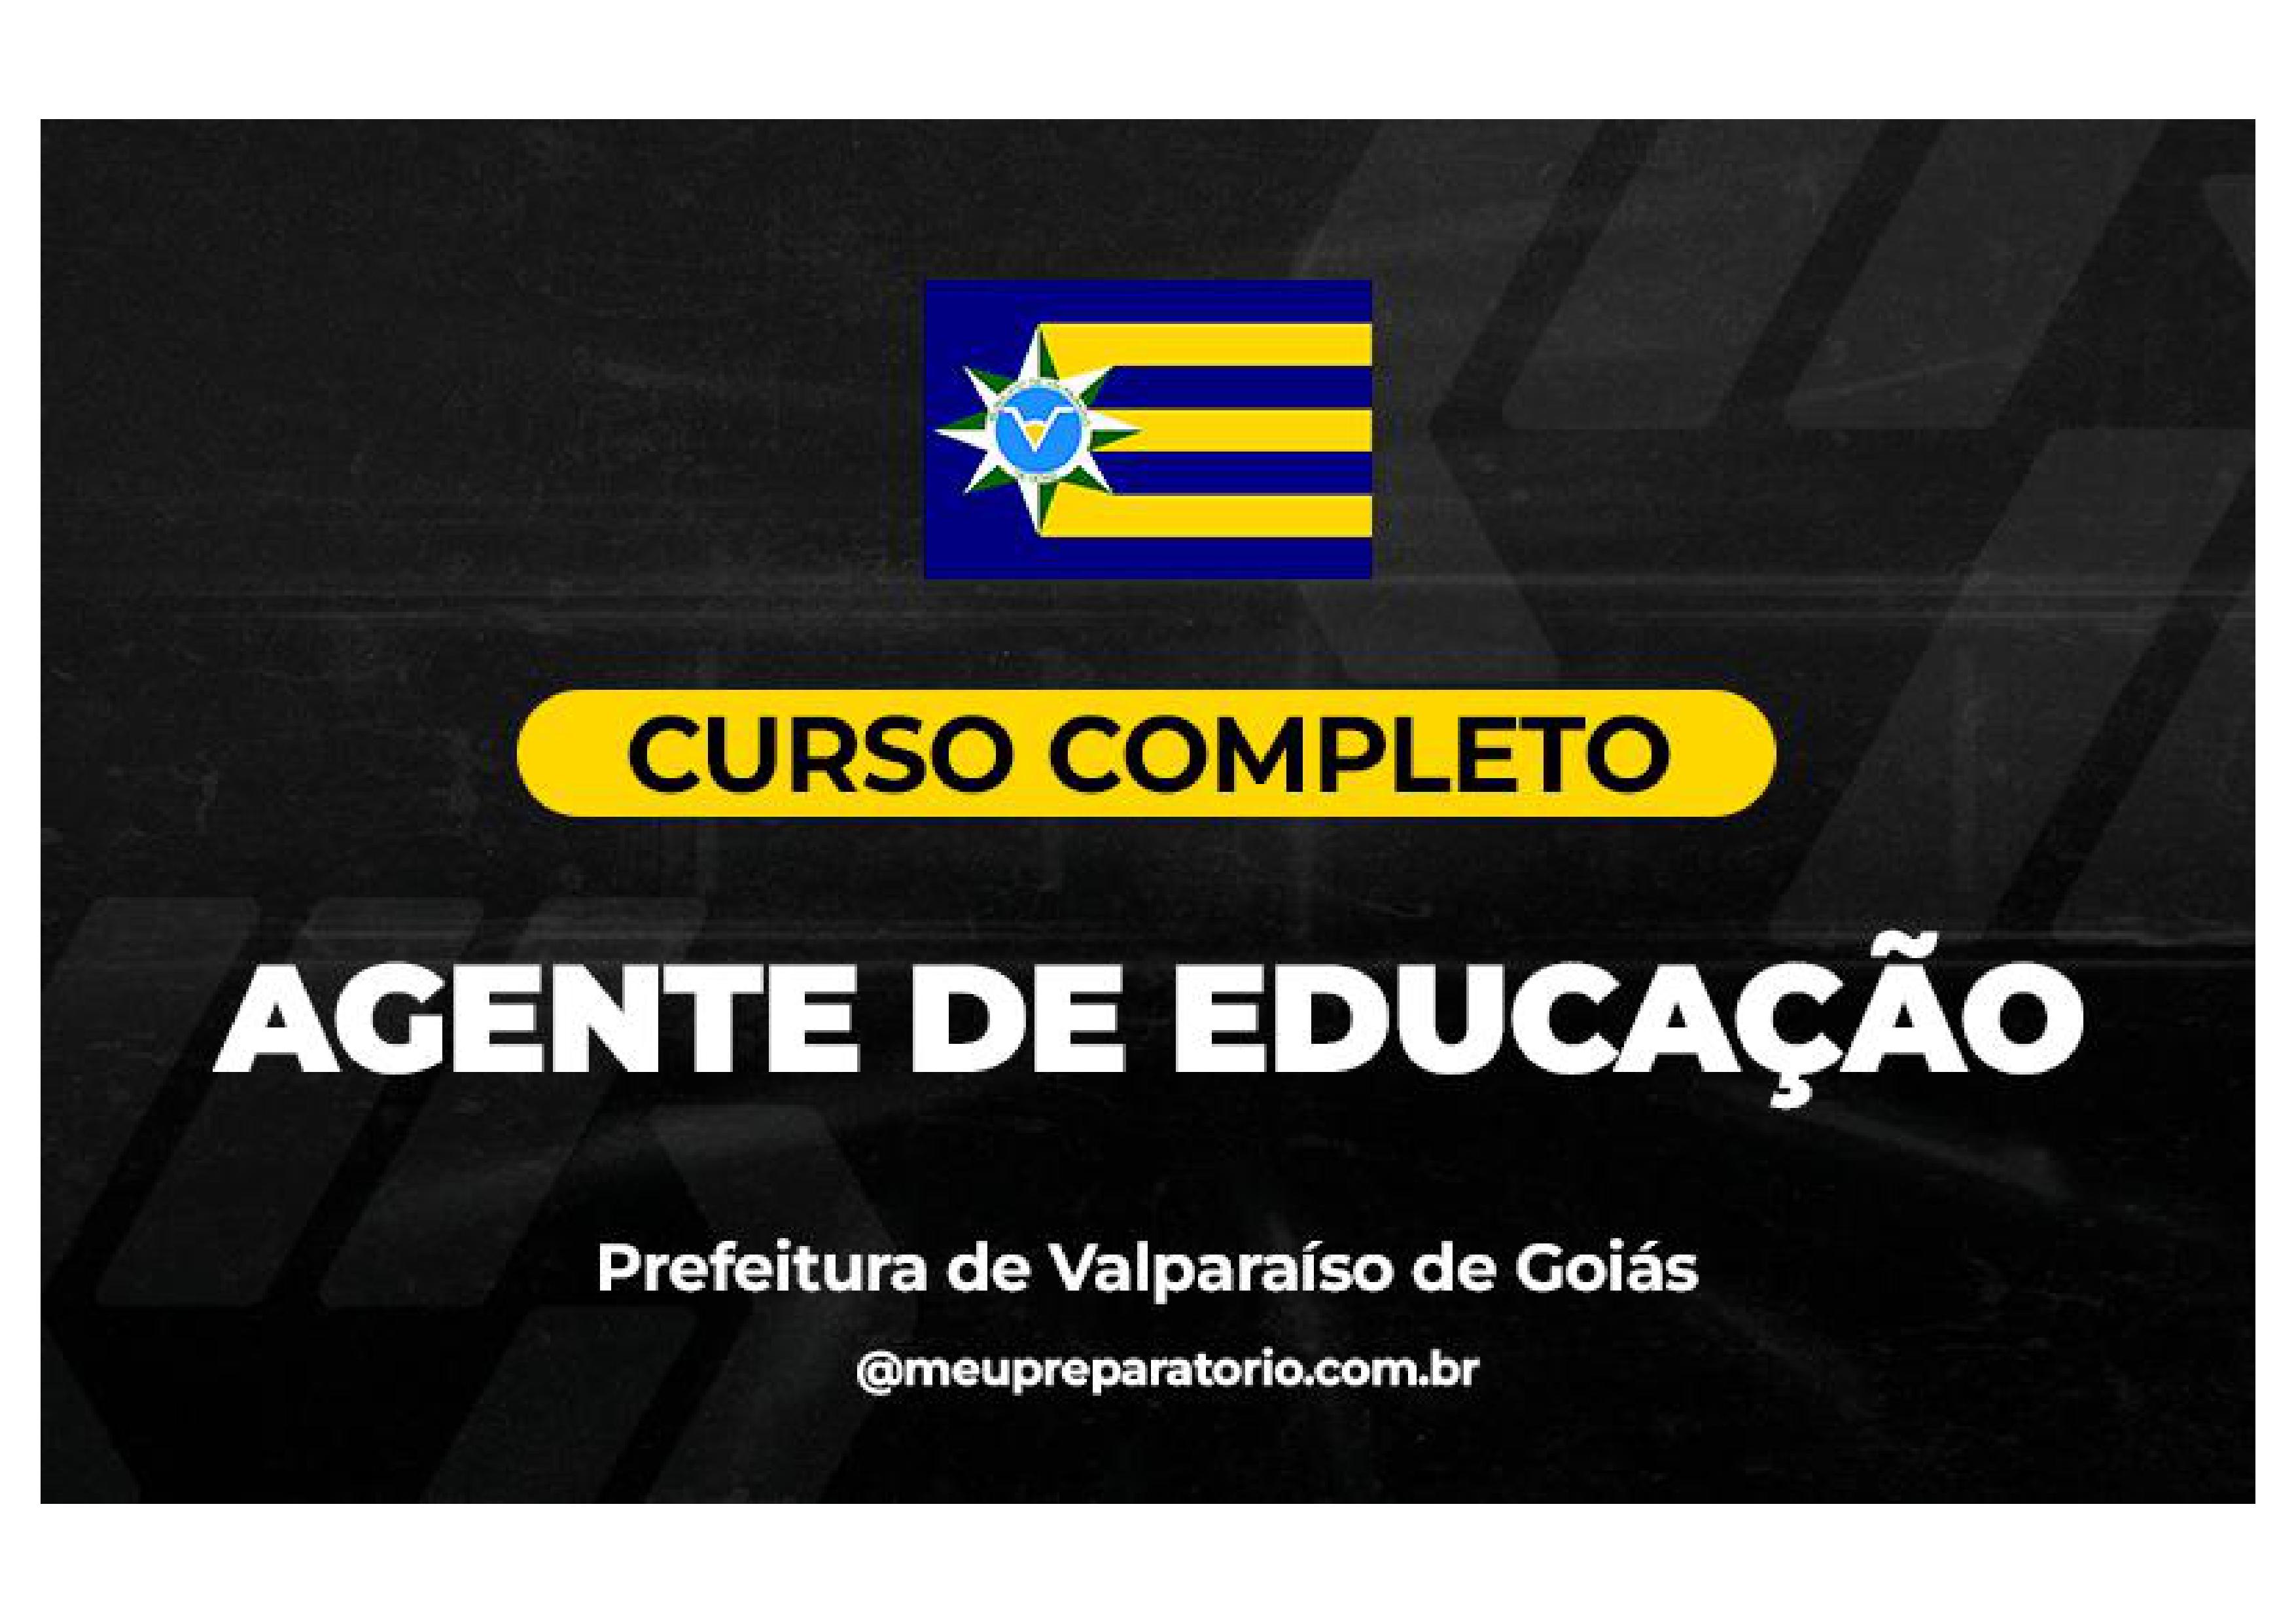 Agente de Educação - Valparaíso (GO)